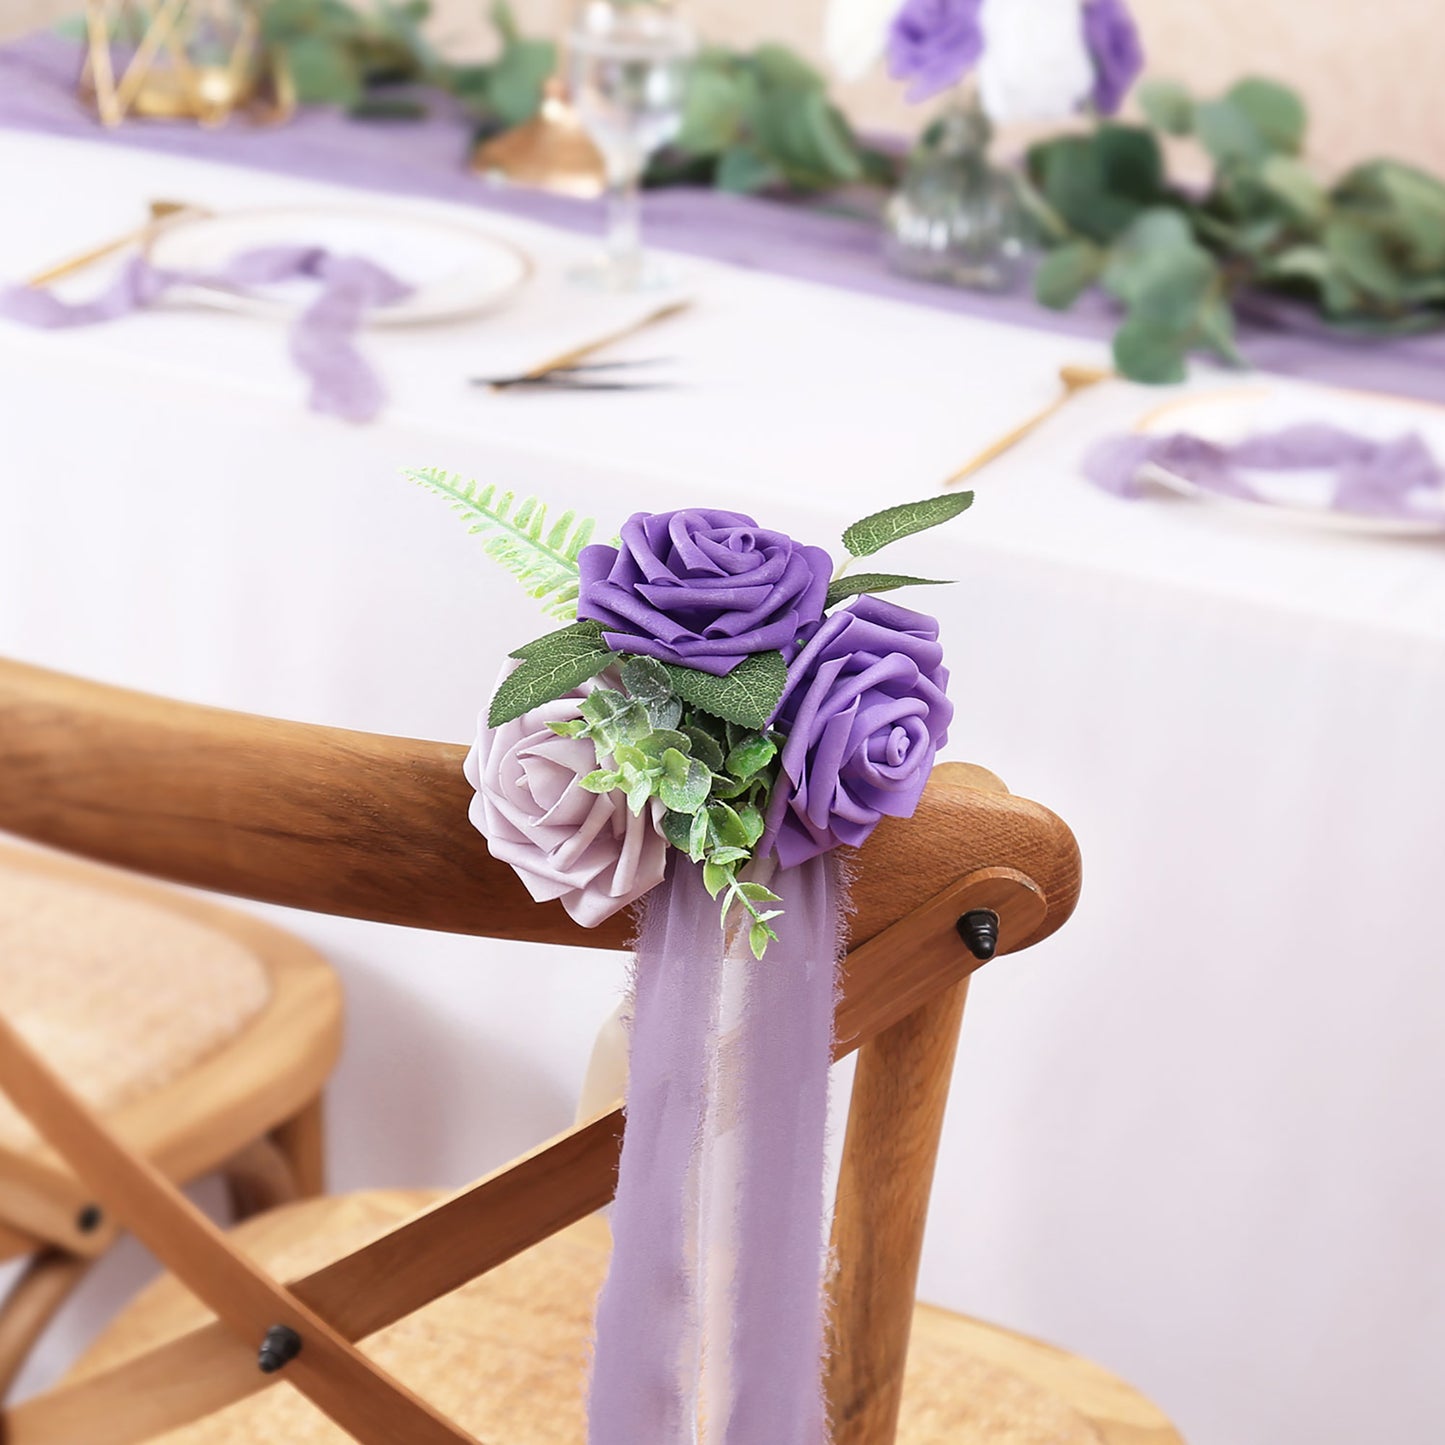 Faneya 12pcs Purple Floral Floral Wedding Flower Artificial Flowers